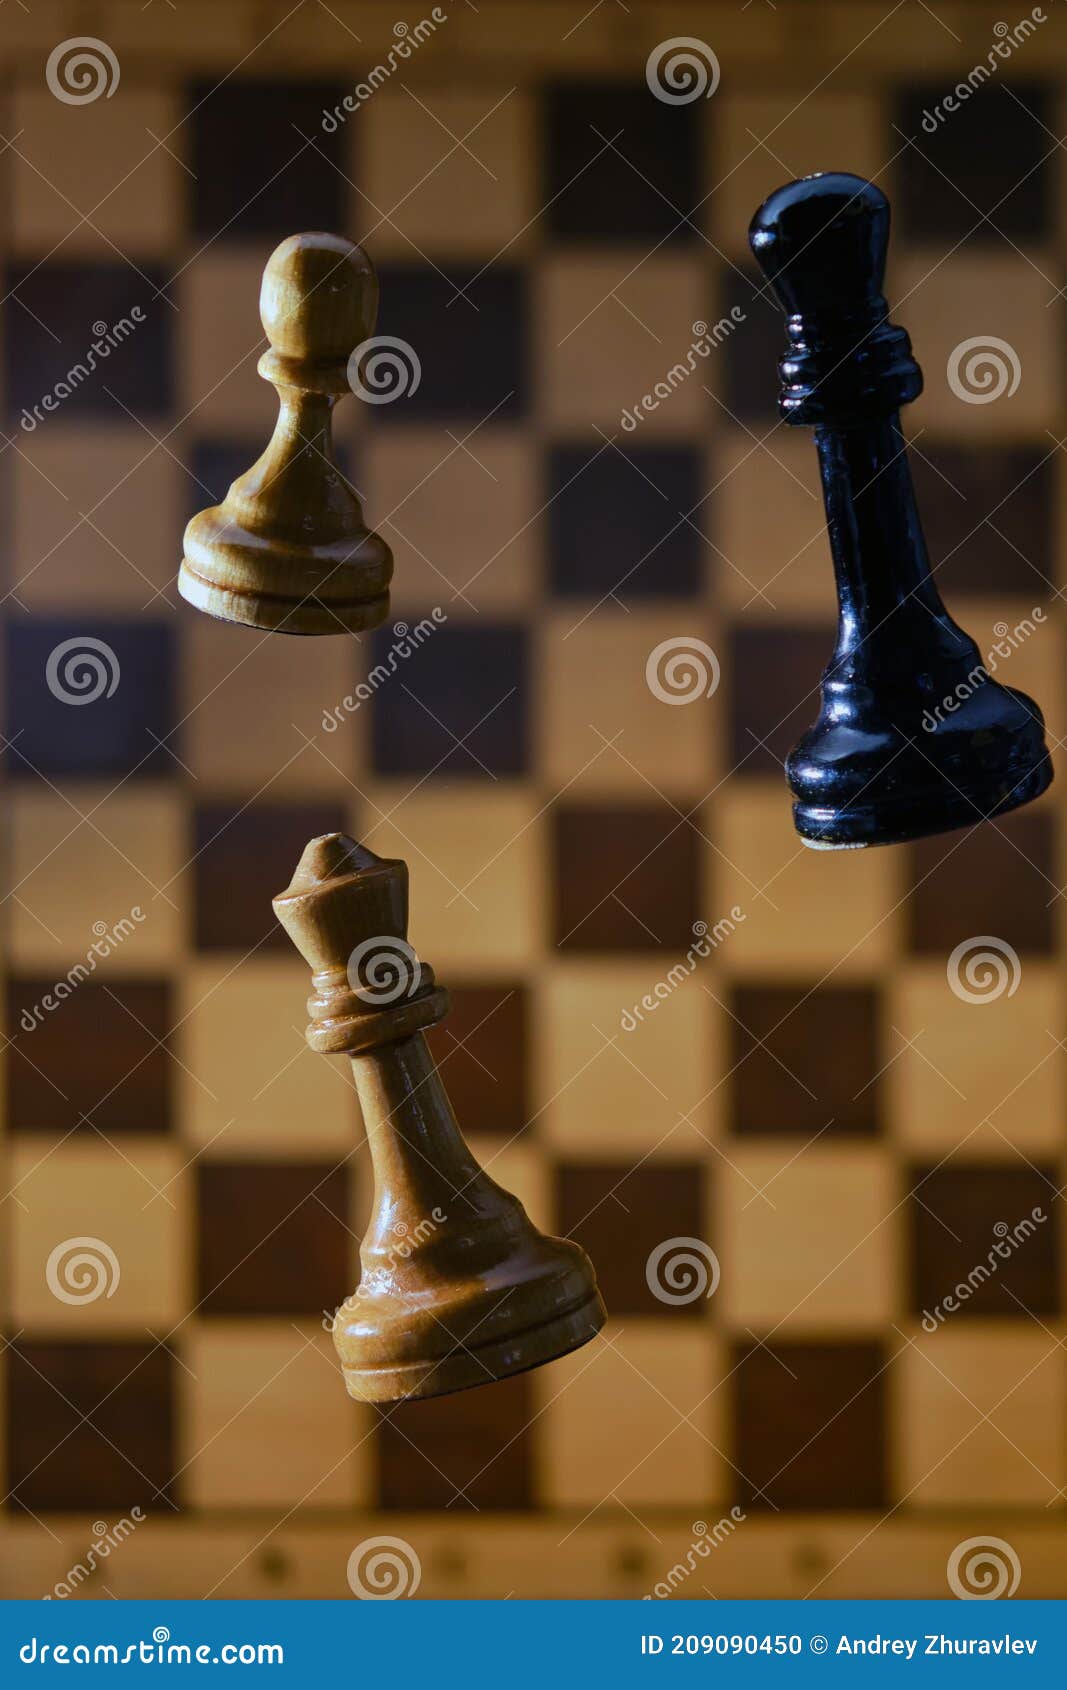 jugando ajedrez flyordie en sala relámpago 